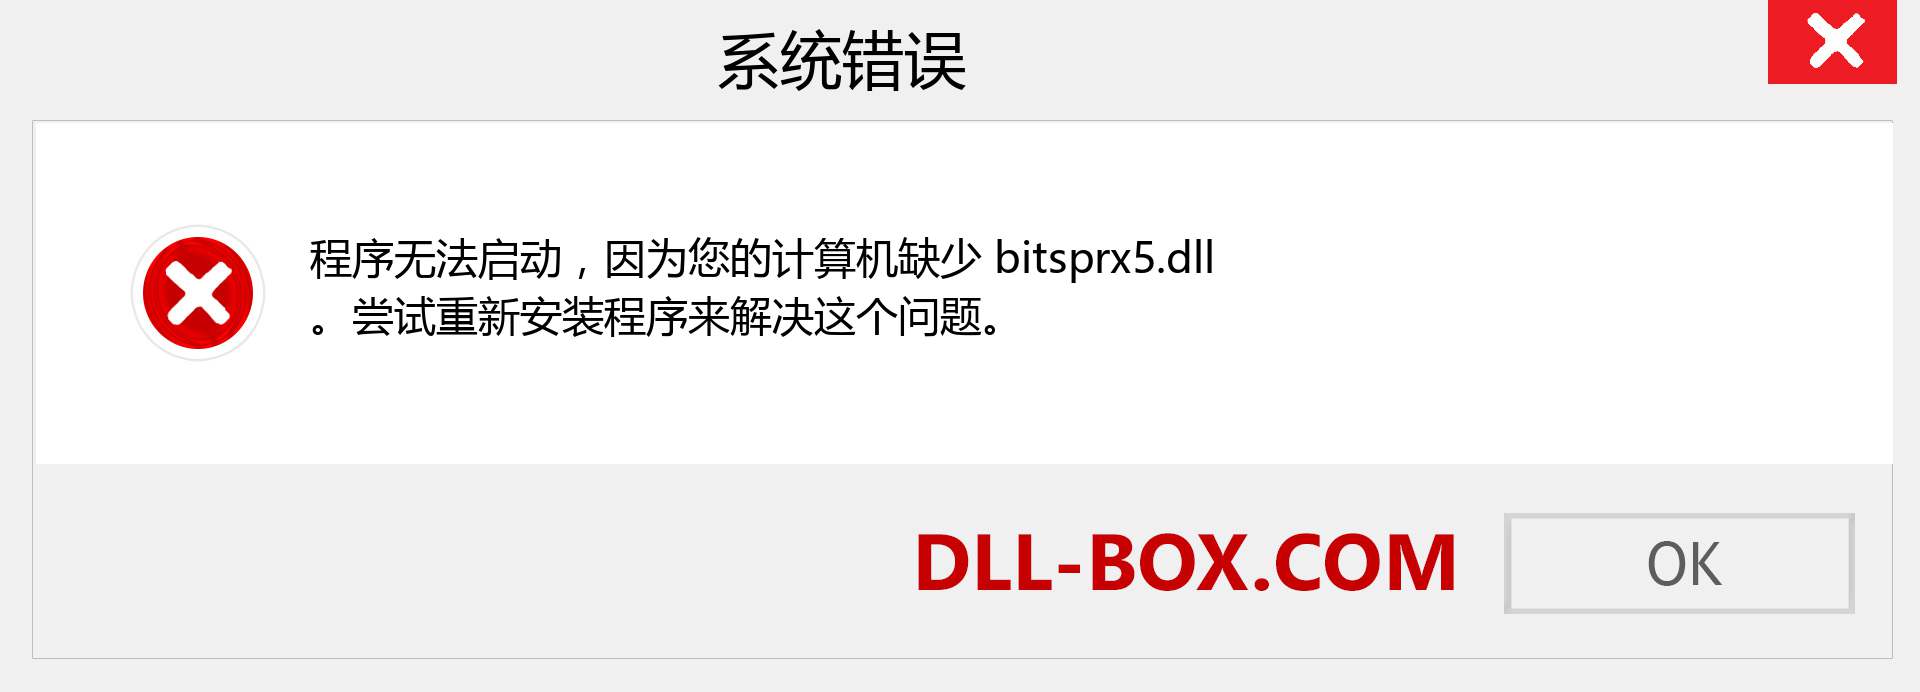 bitsprx5.dll 文件丢失？。 适用于 Windows 7、8、10 的下载 - 修复 Windows、照片、图像上的 bitsprx5 dll 丢失错误